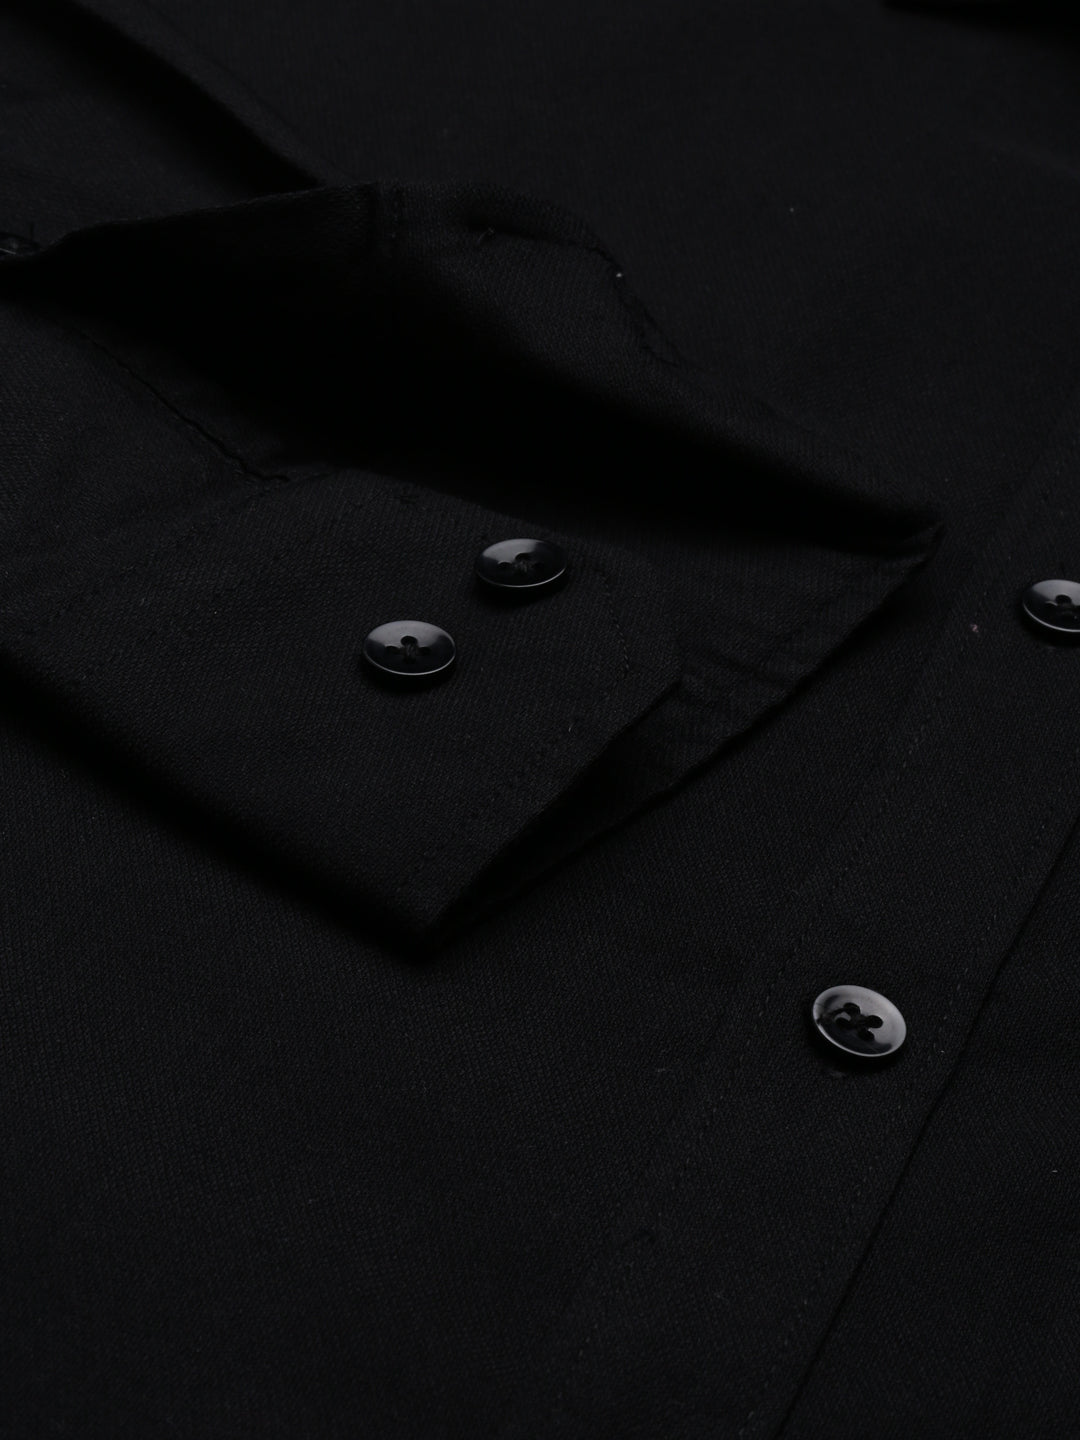 Black Solid Casual Shirt Solid Shirt Bushirt   